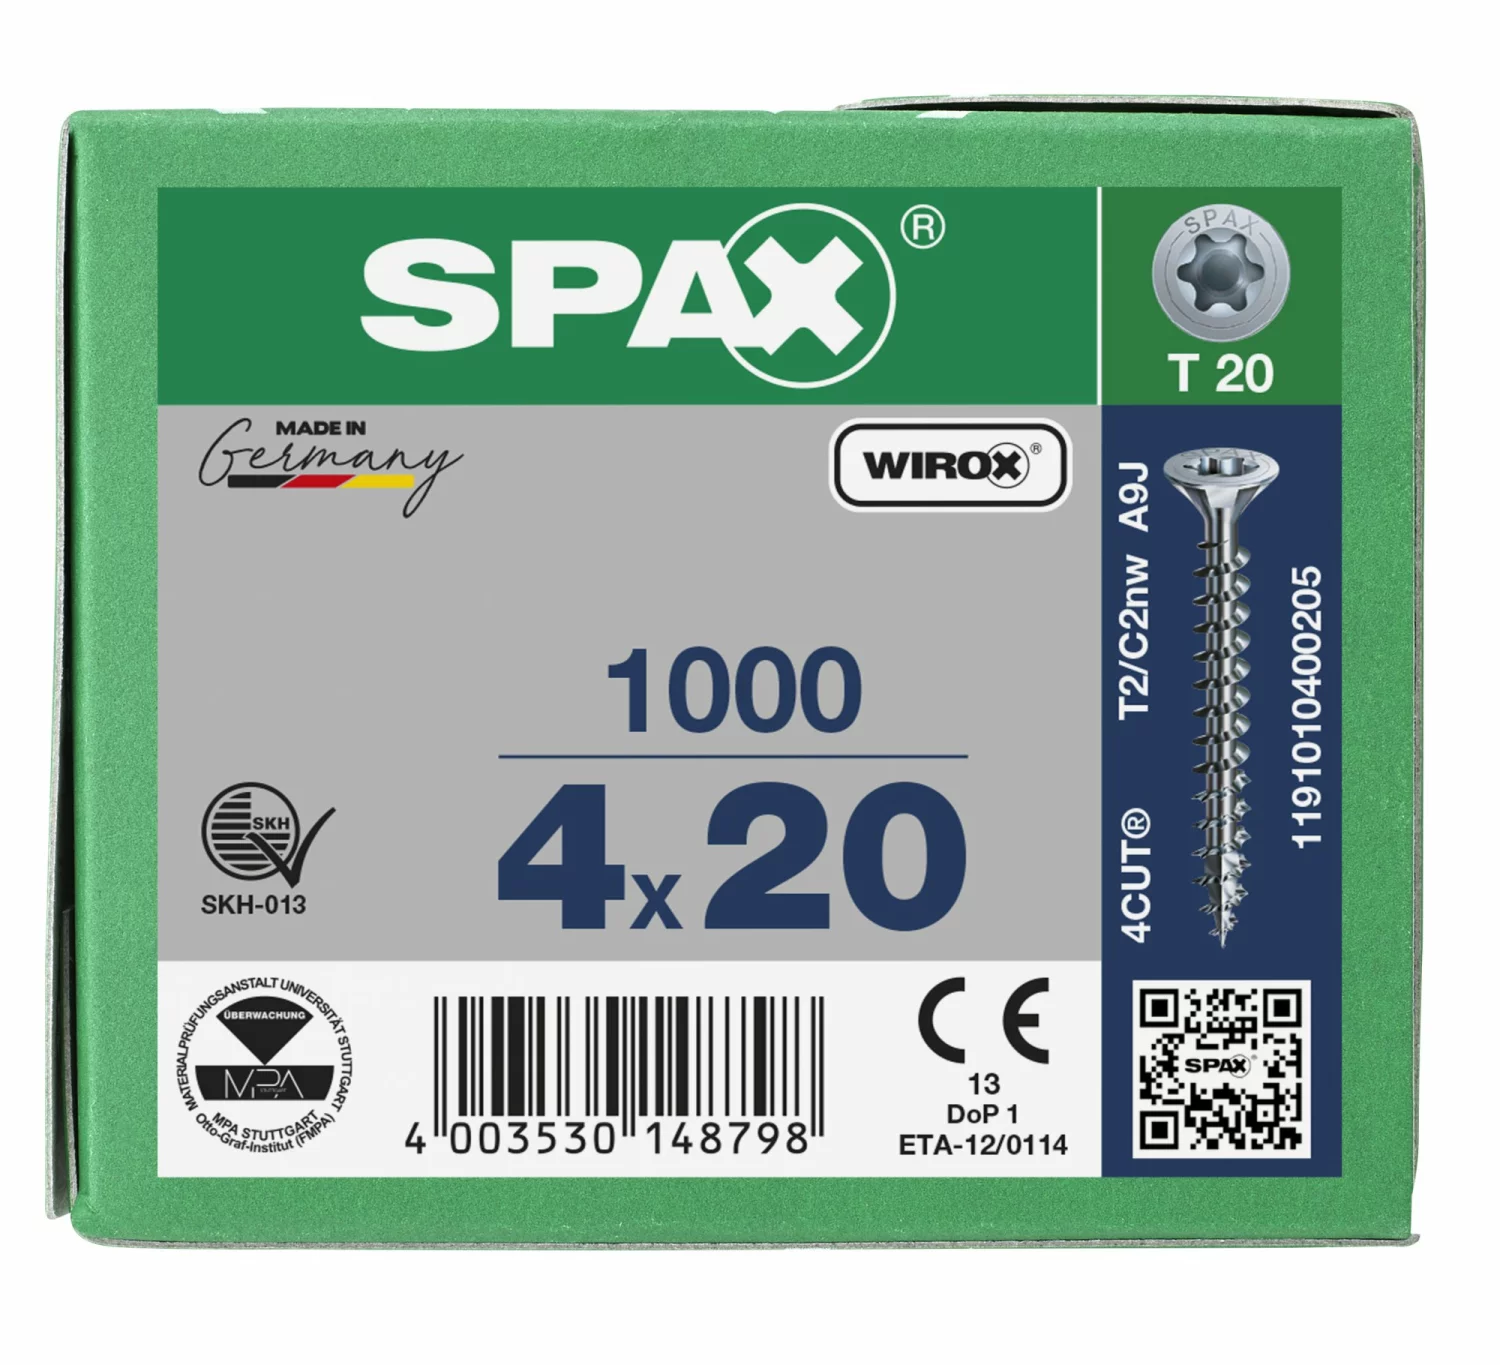 SPAX 1191010400205 Universele schroef, Verzonken kop, 4 x 20, Voldraad, T-STAR plus TX20 - WIROX - 1000 stuks